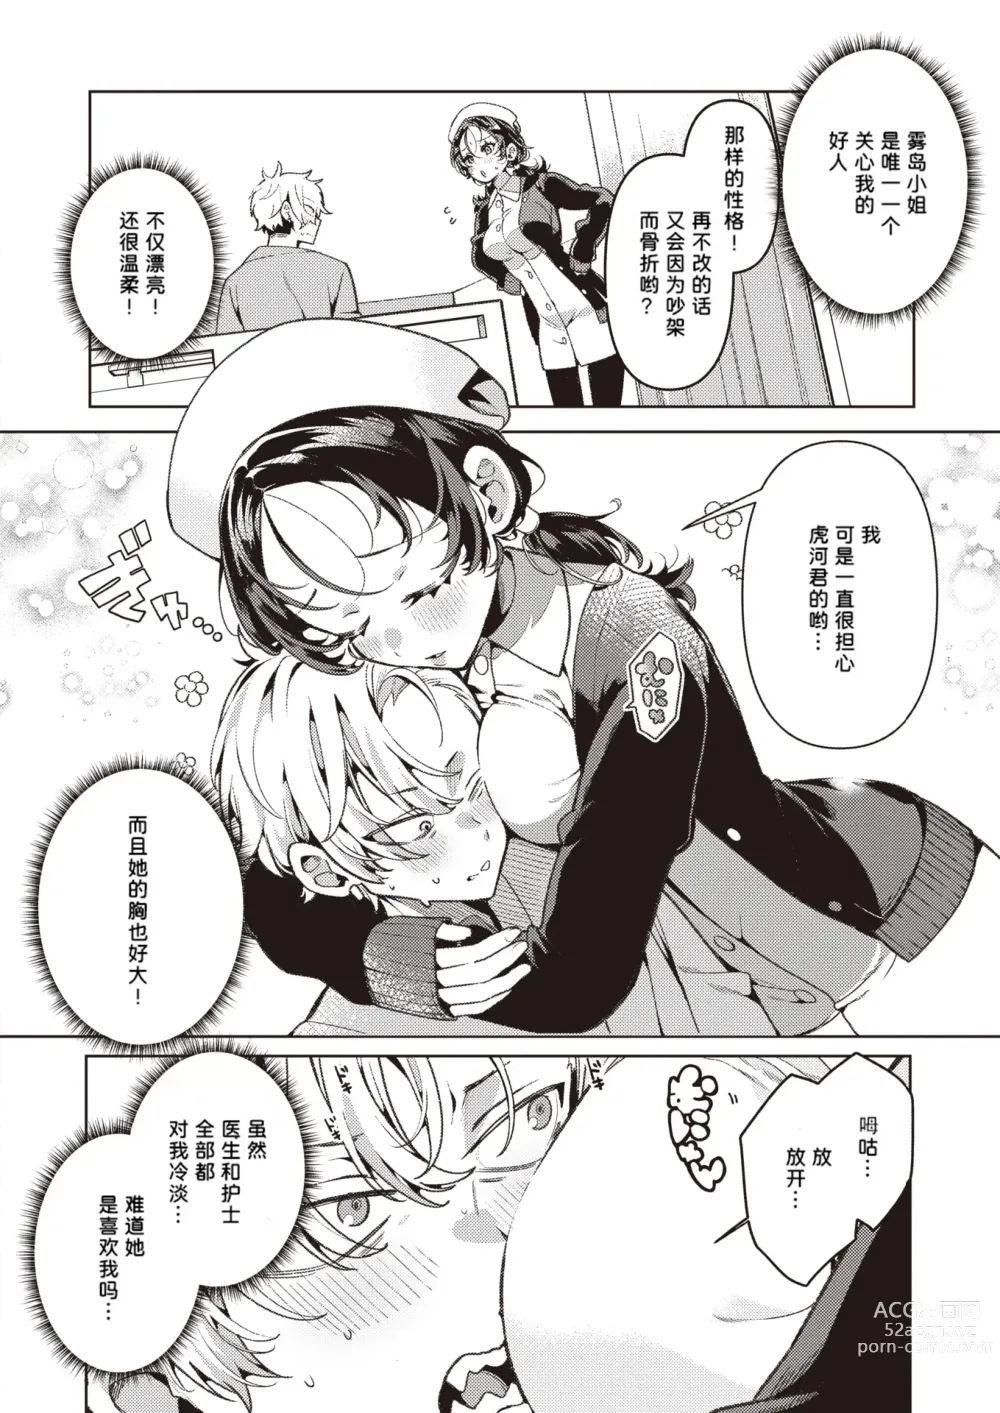 Page 3 of manga Yasashii? Nurse no Kirishima-san